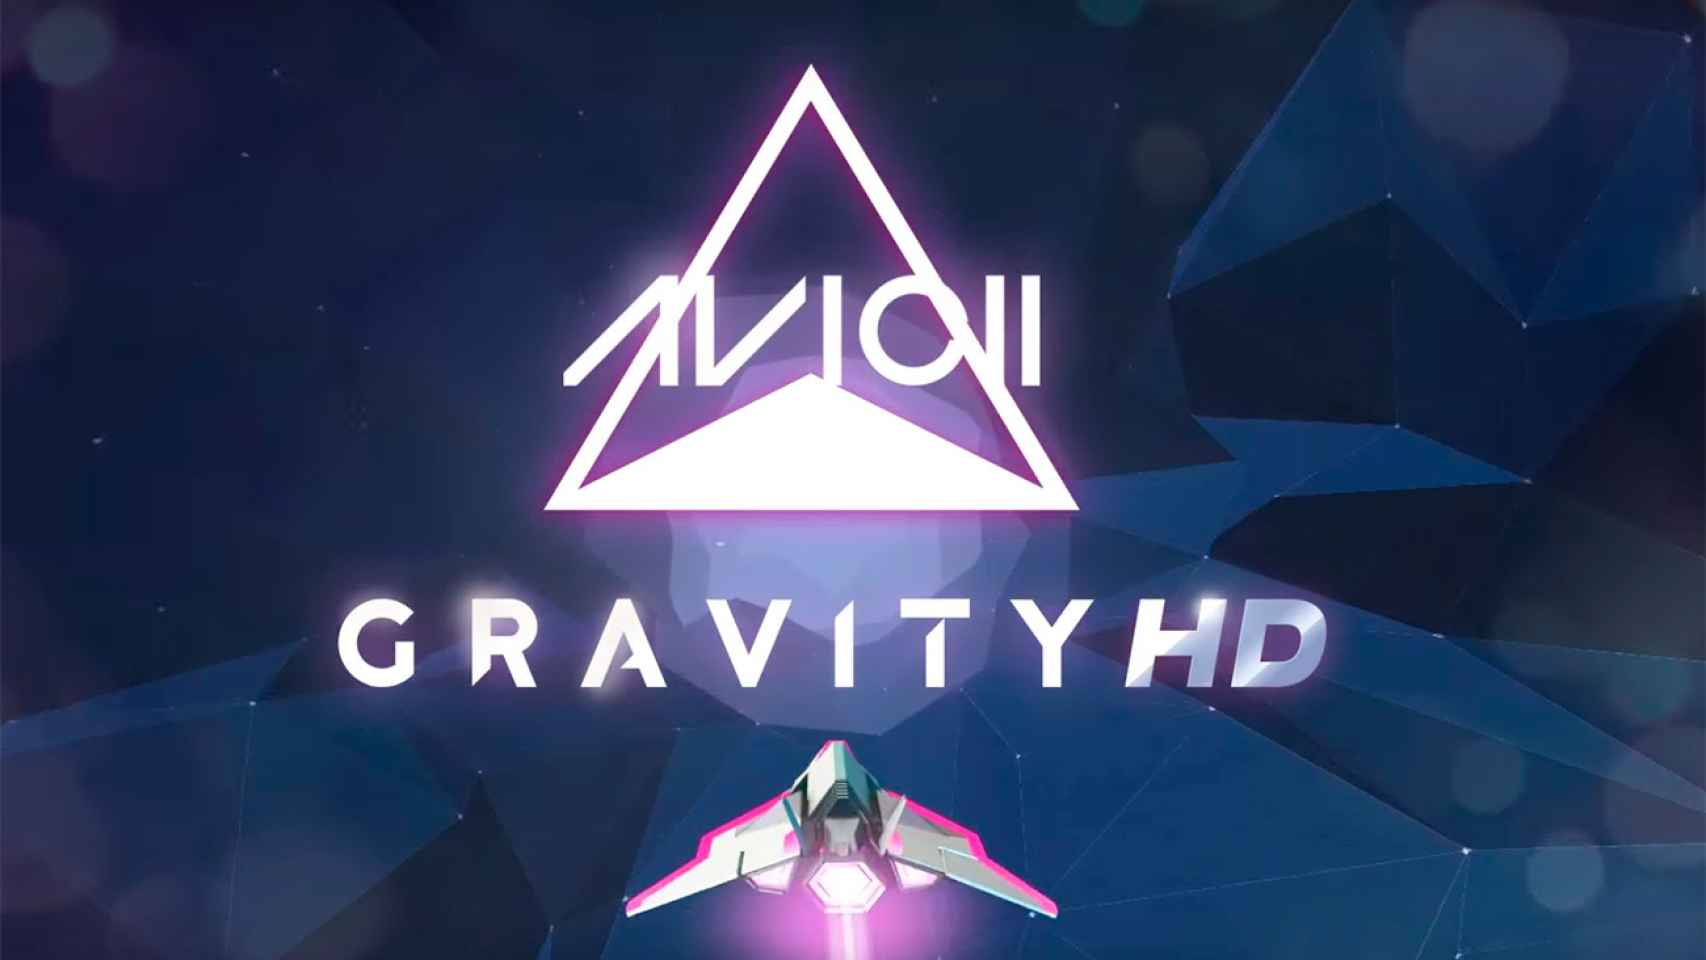 Vuela al ritmo de Avicci en el juego musical espacial Avicii Gravity HD